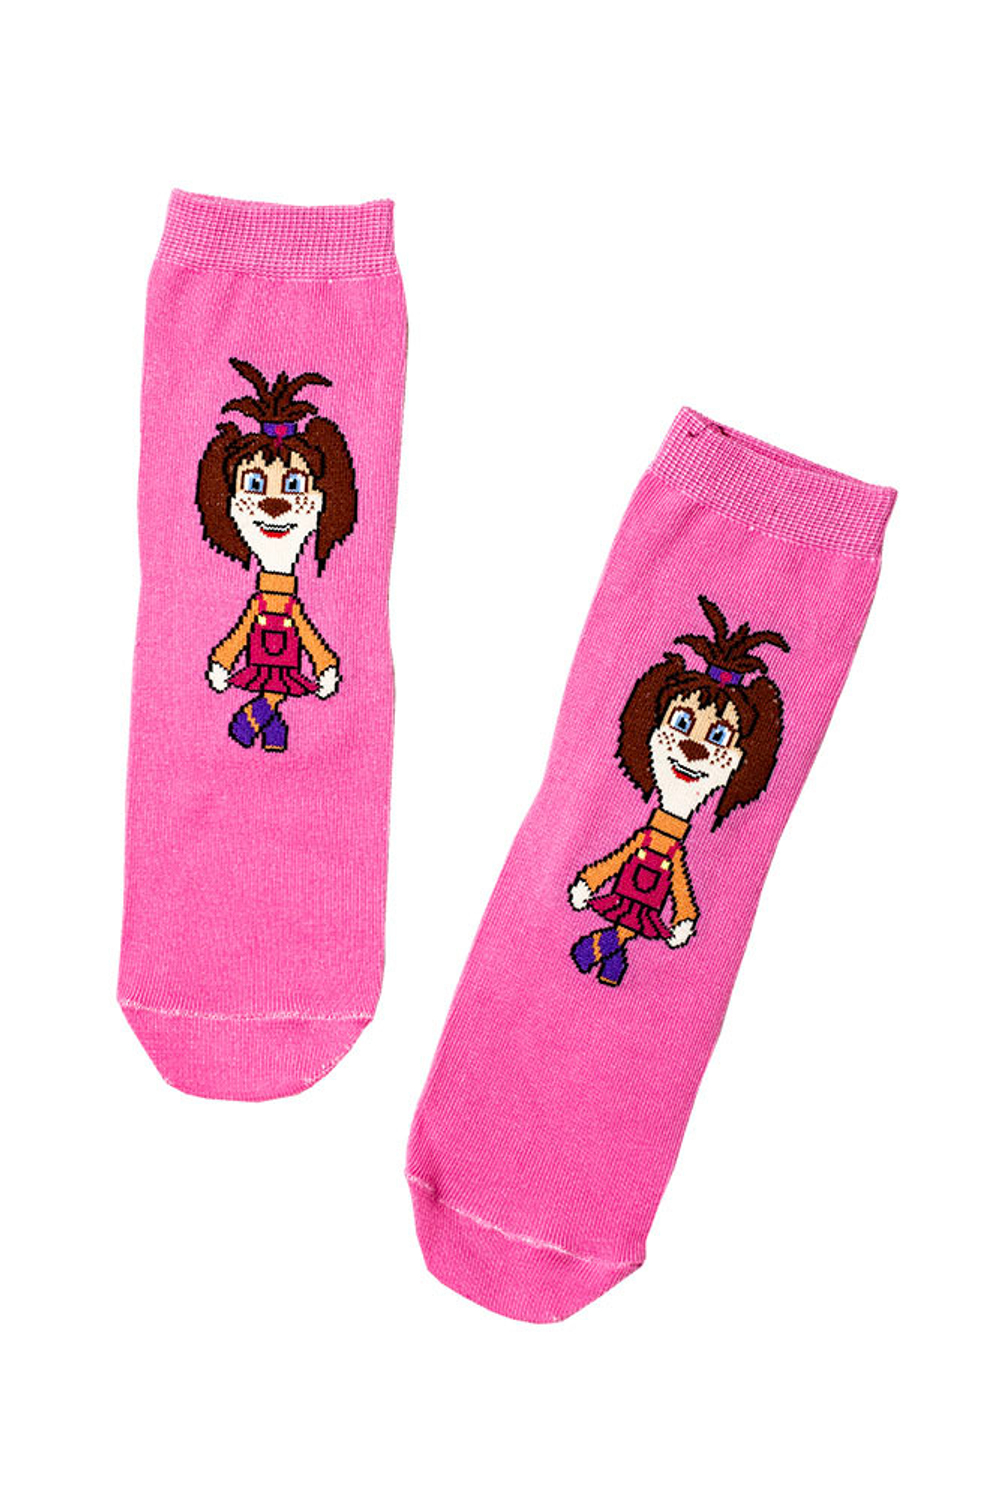 Носки детские Барбоскины для девочки "Лиза" купить в ассортименте